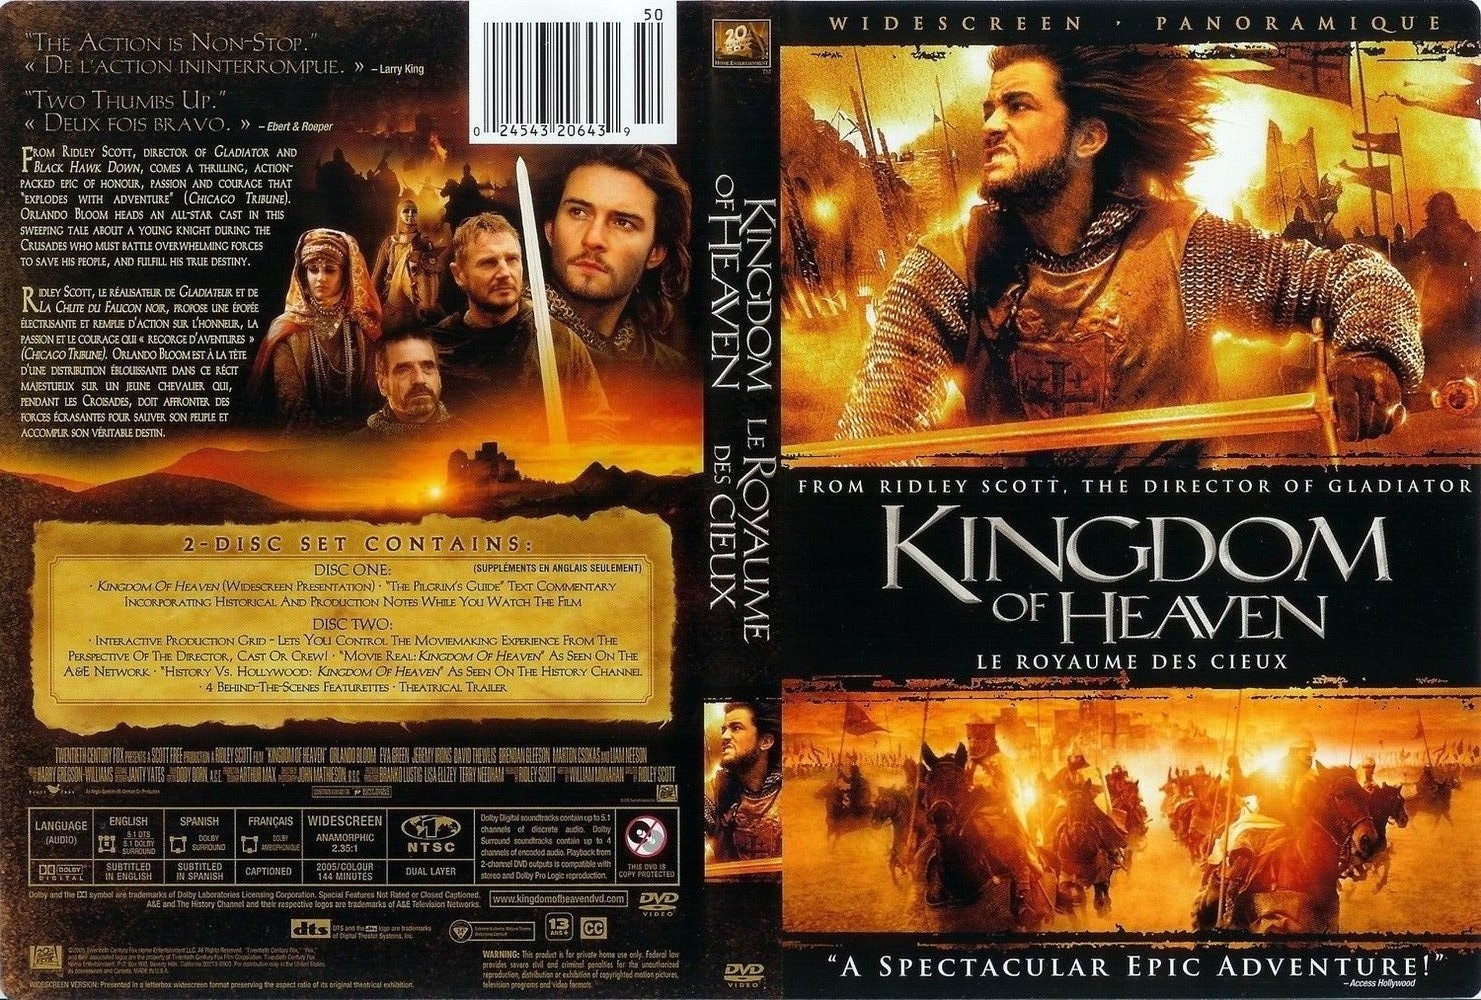 Jaquette DVD Le royaume des cieux - Kingdom of heaven (canadienne)